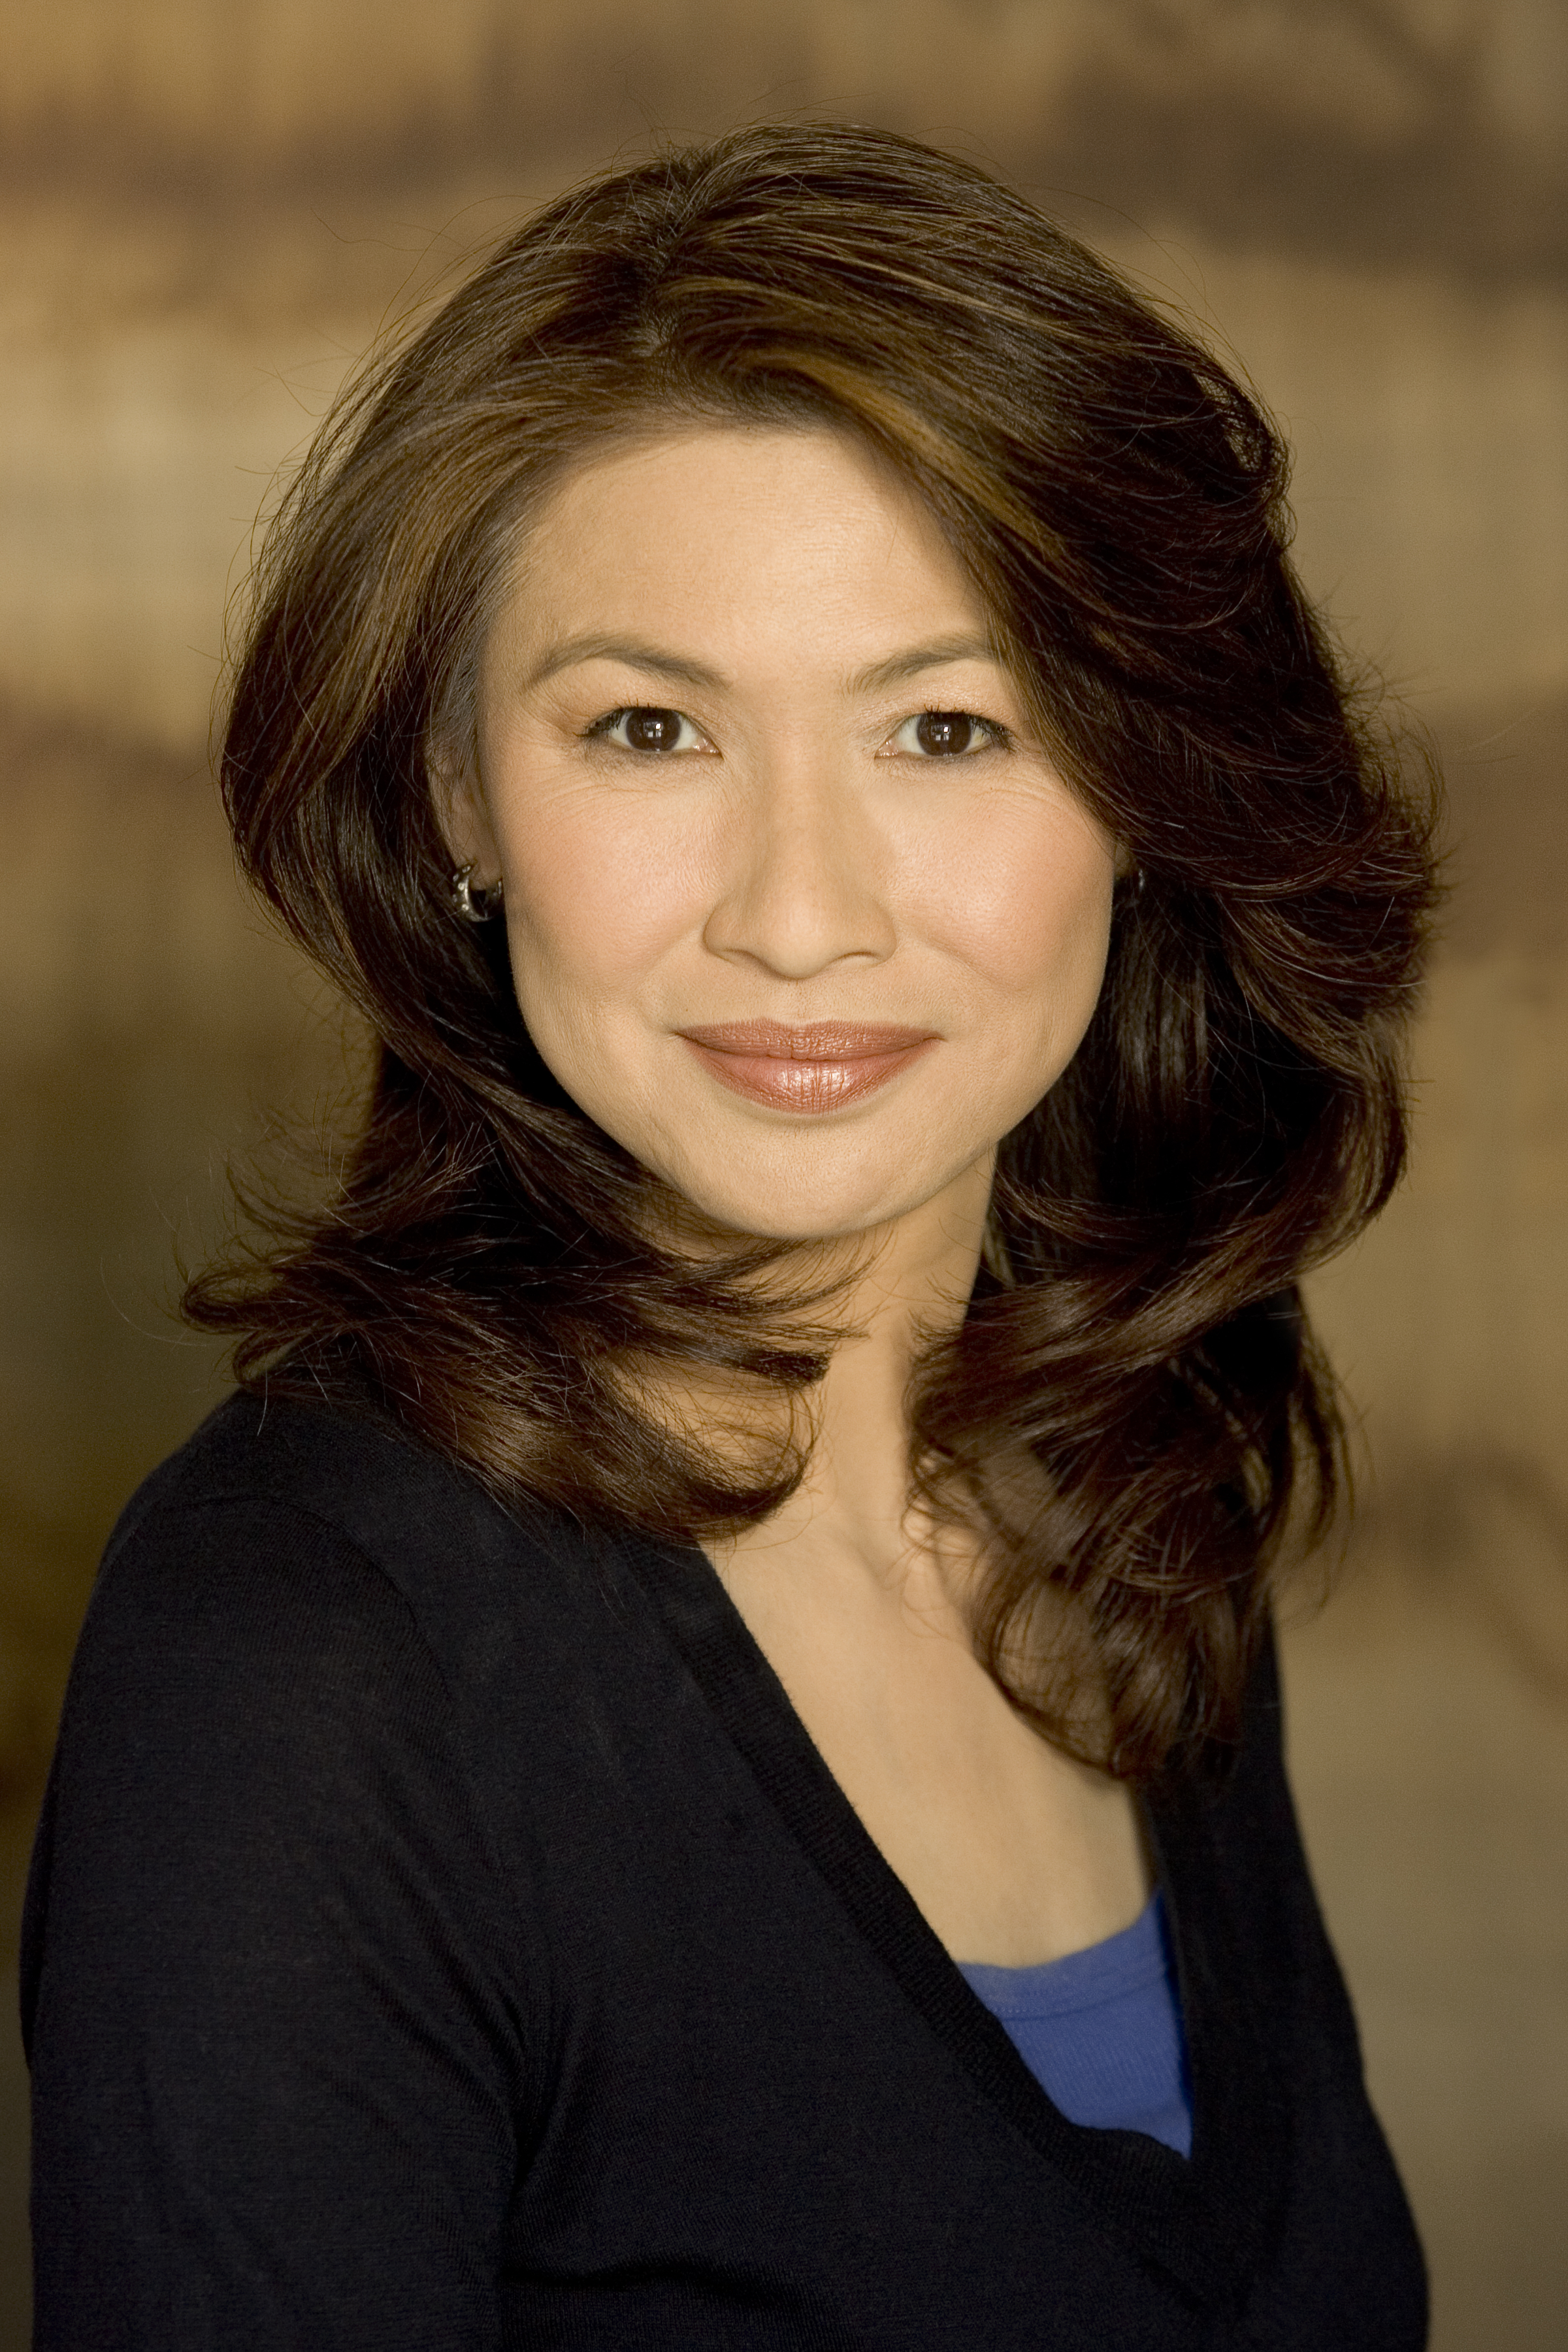 Victoria Chen